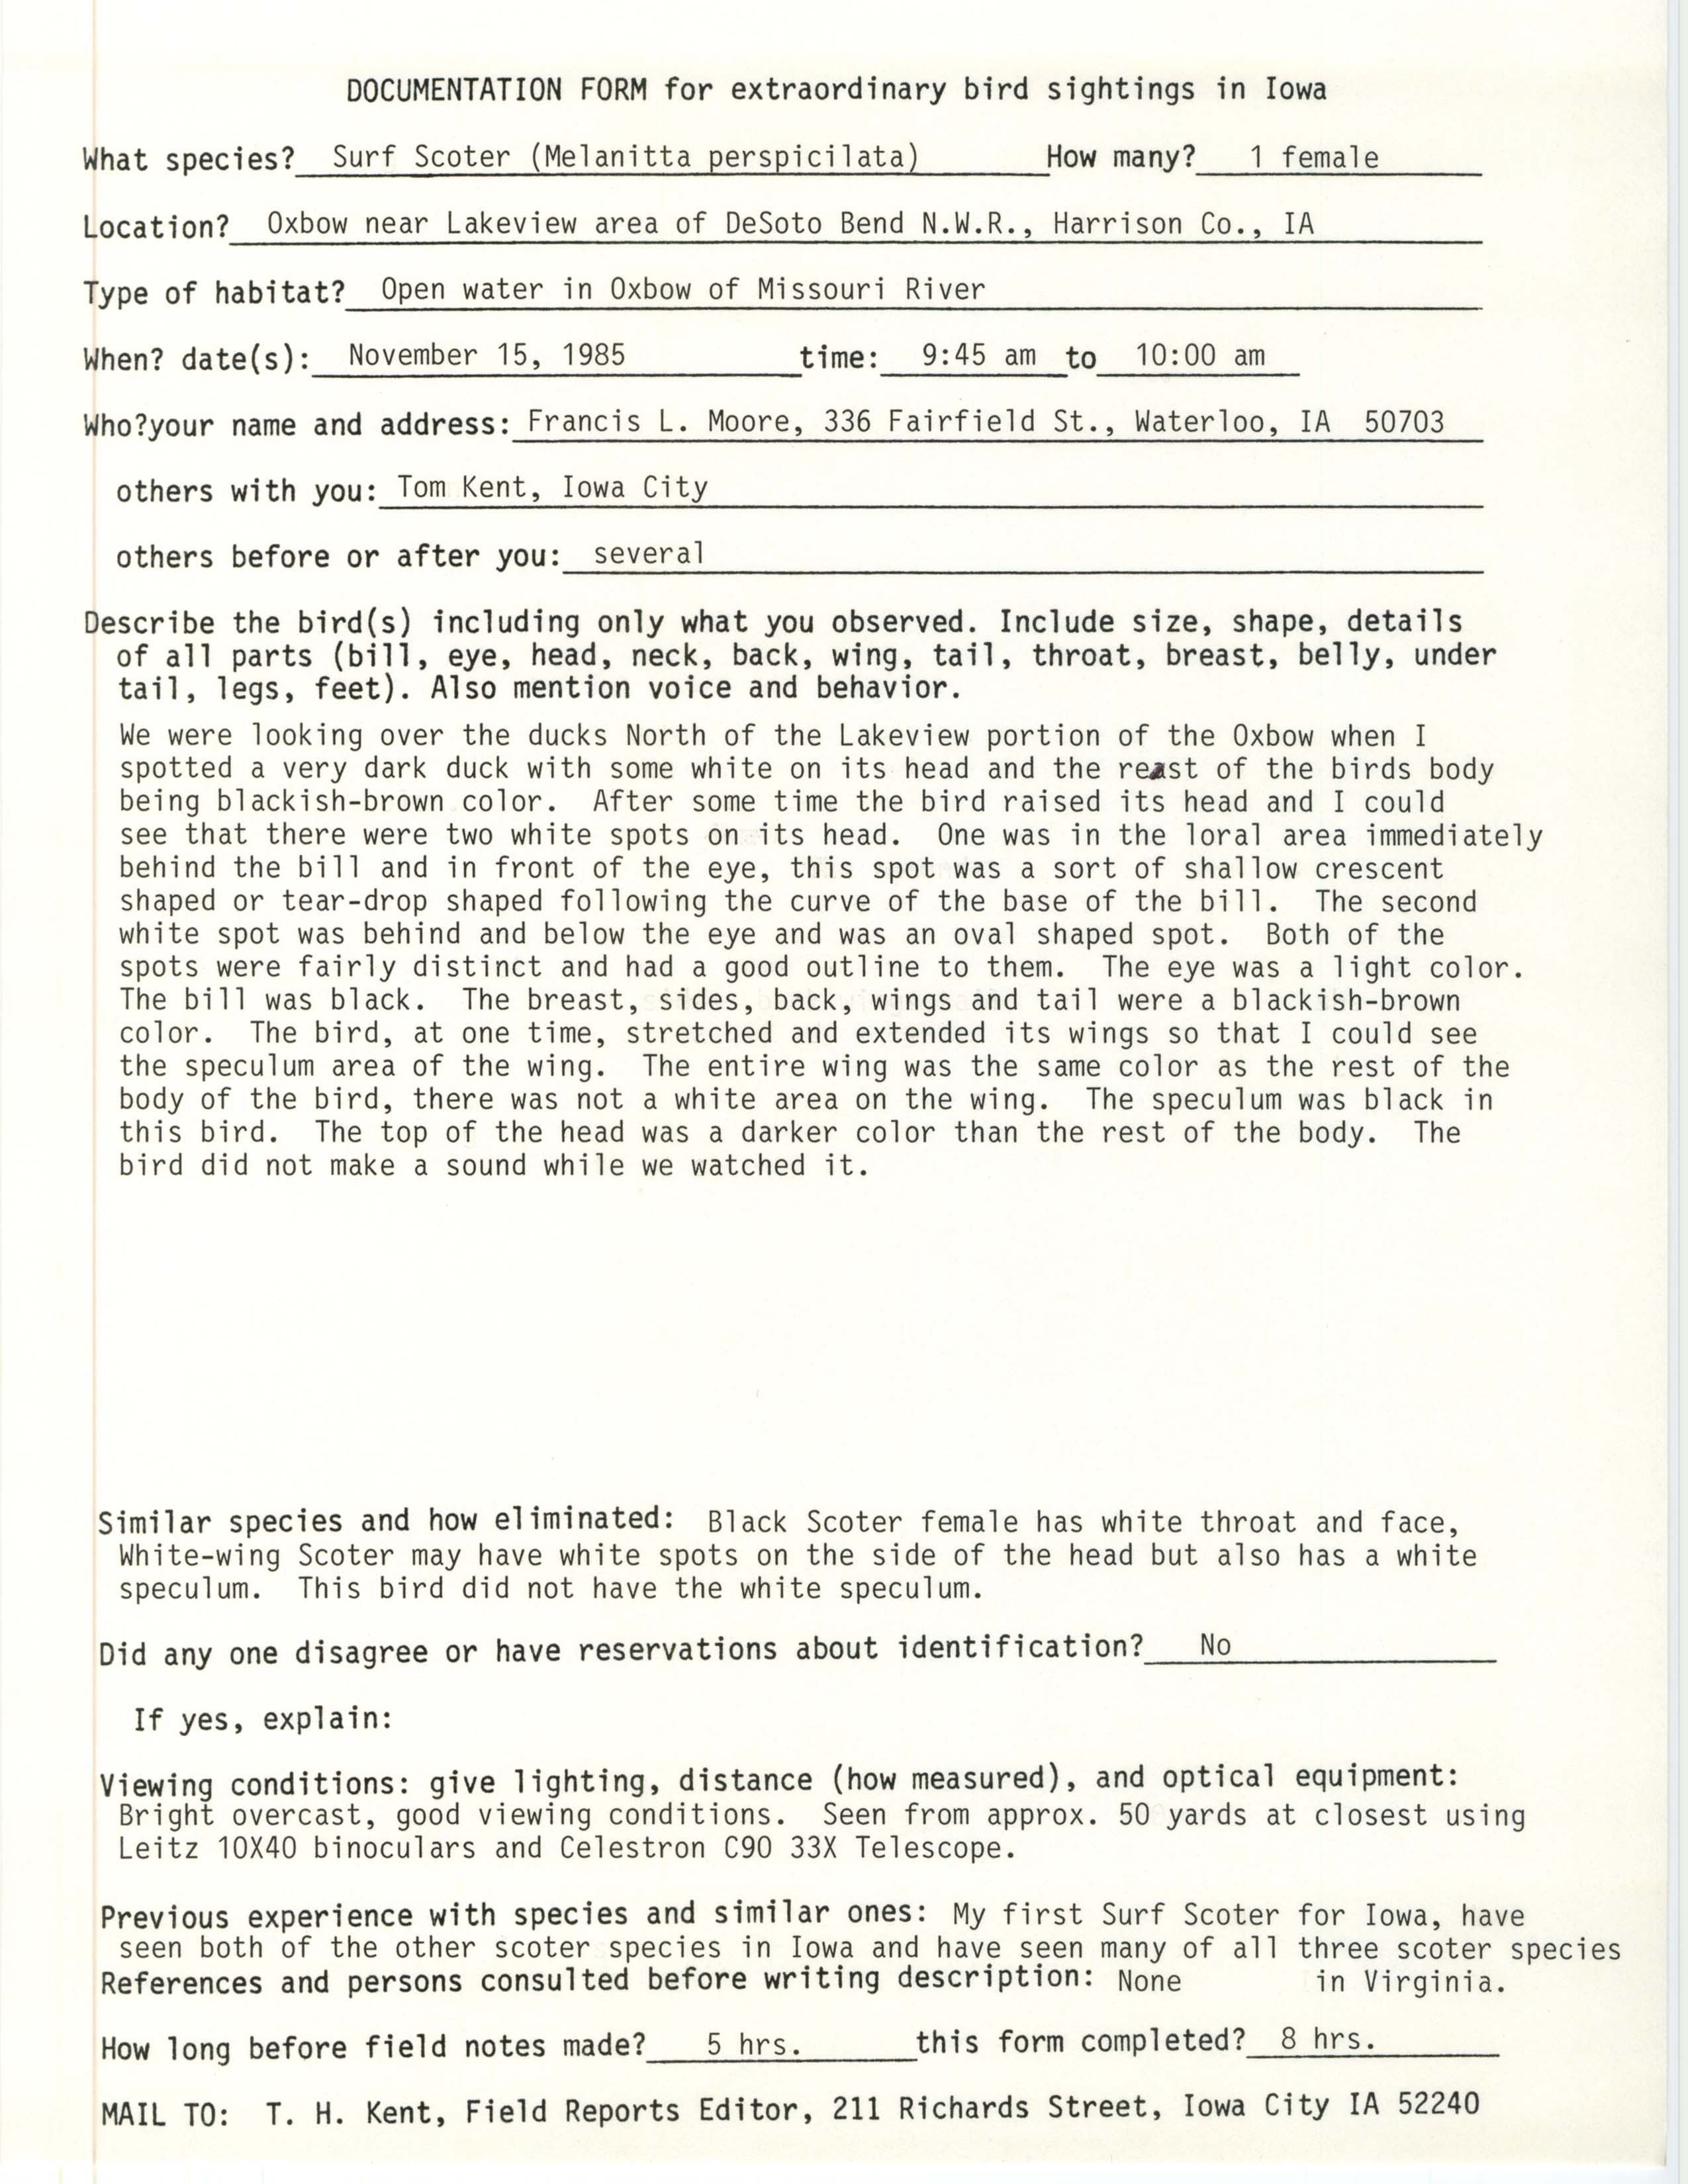 Rare bird documentation form for Surf Scoter at DeSoto Bend National Wildlife Refuge, 1985